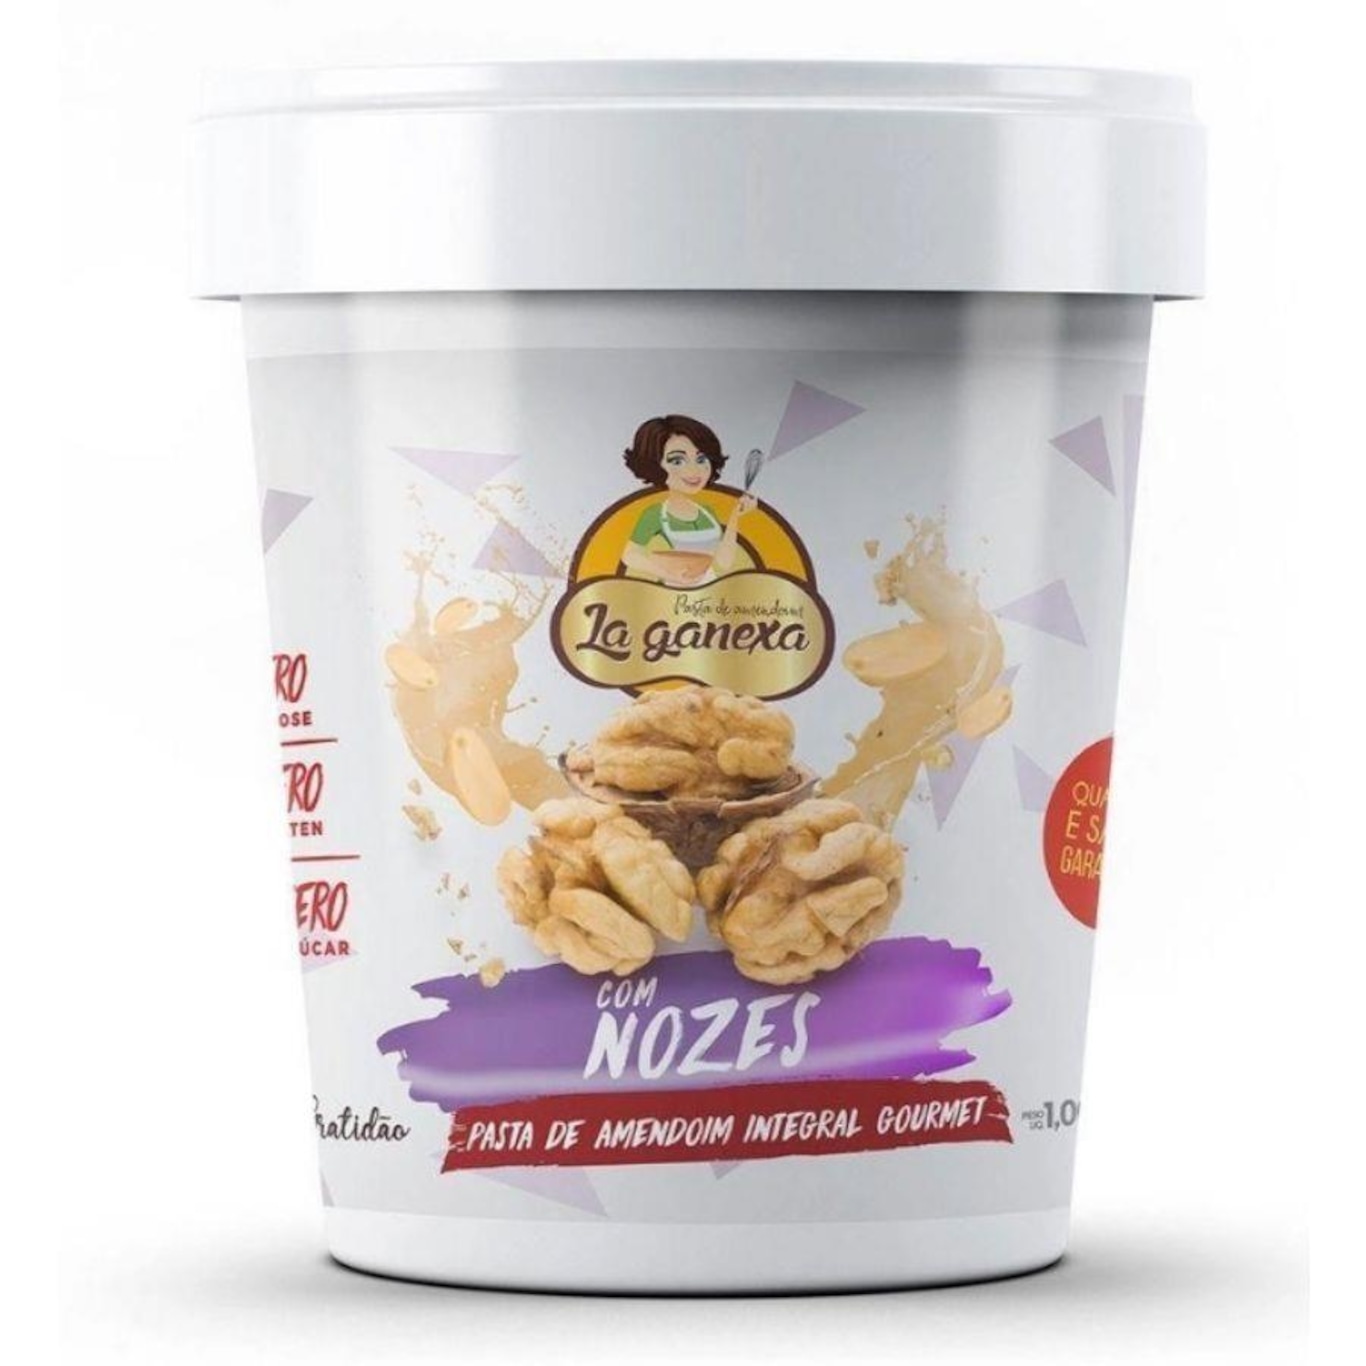 Pasta de Amendoim Integral Gourmet La Ganexa - Nozes - 1Kg